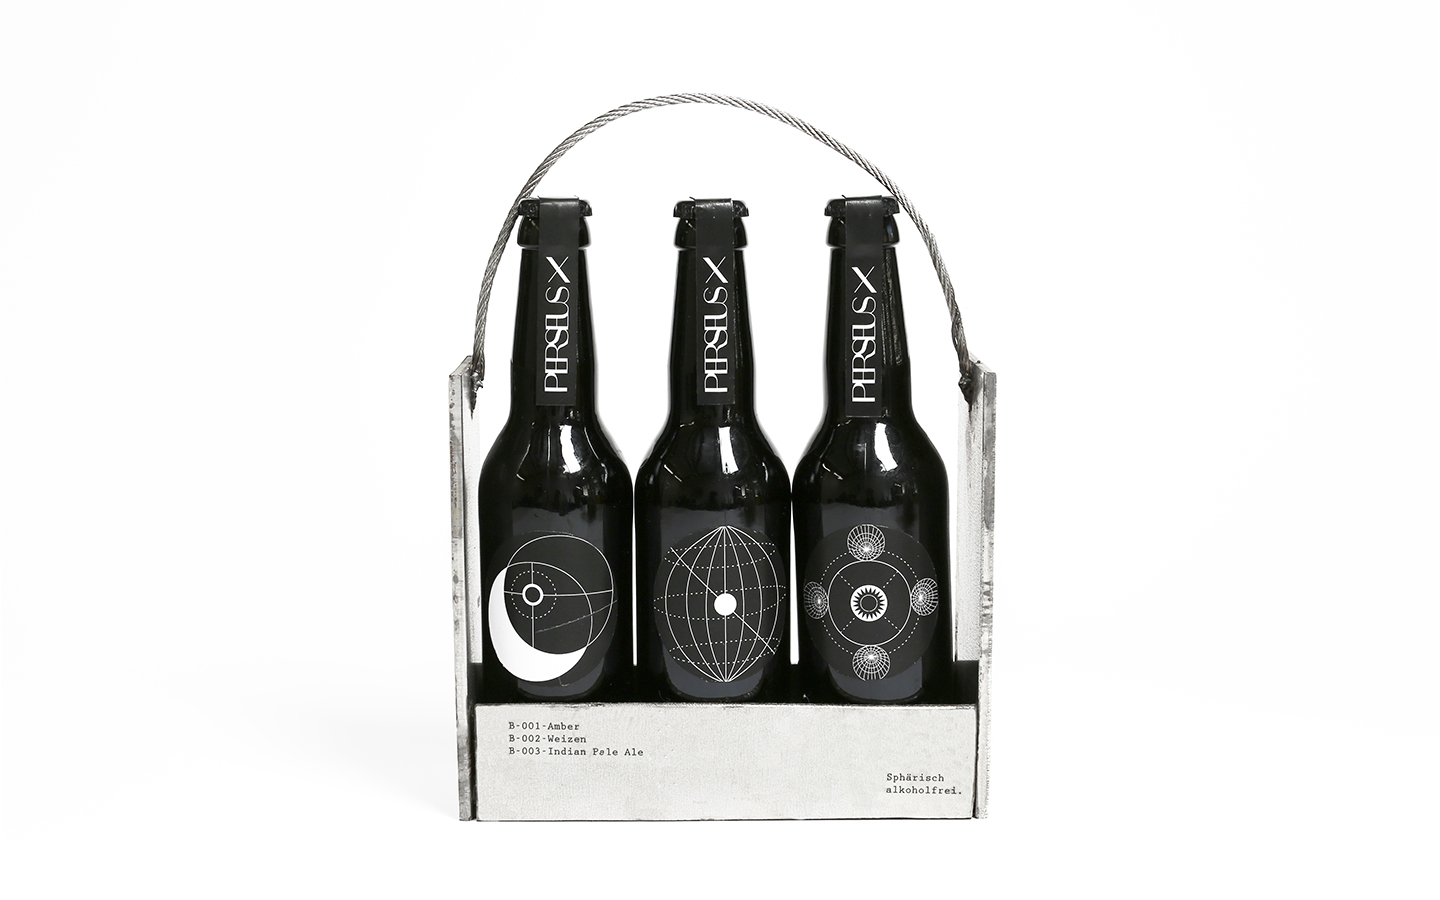 Branding alkoholfreies Bier, Packaging-Design